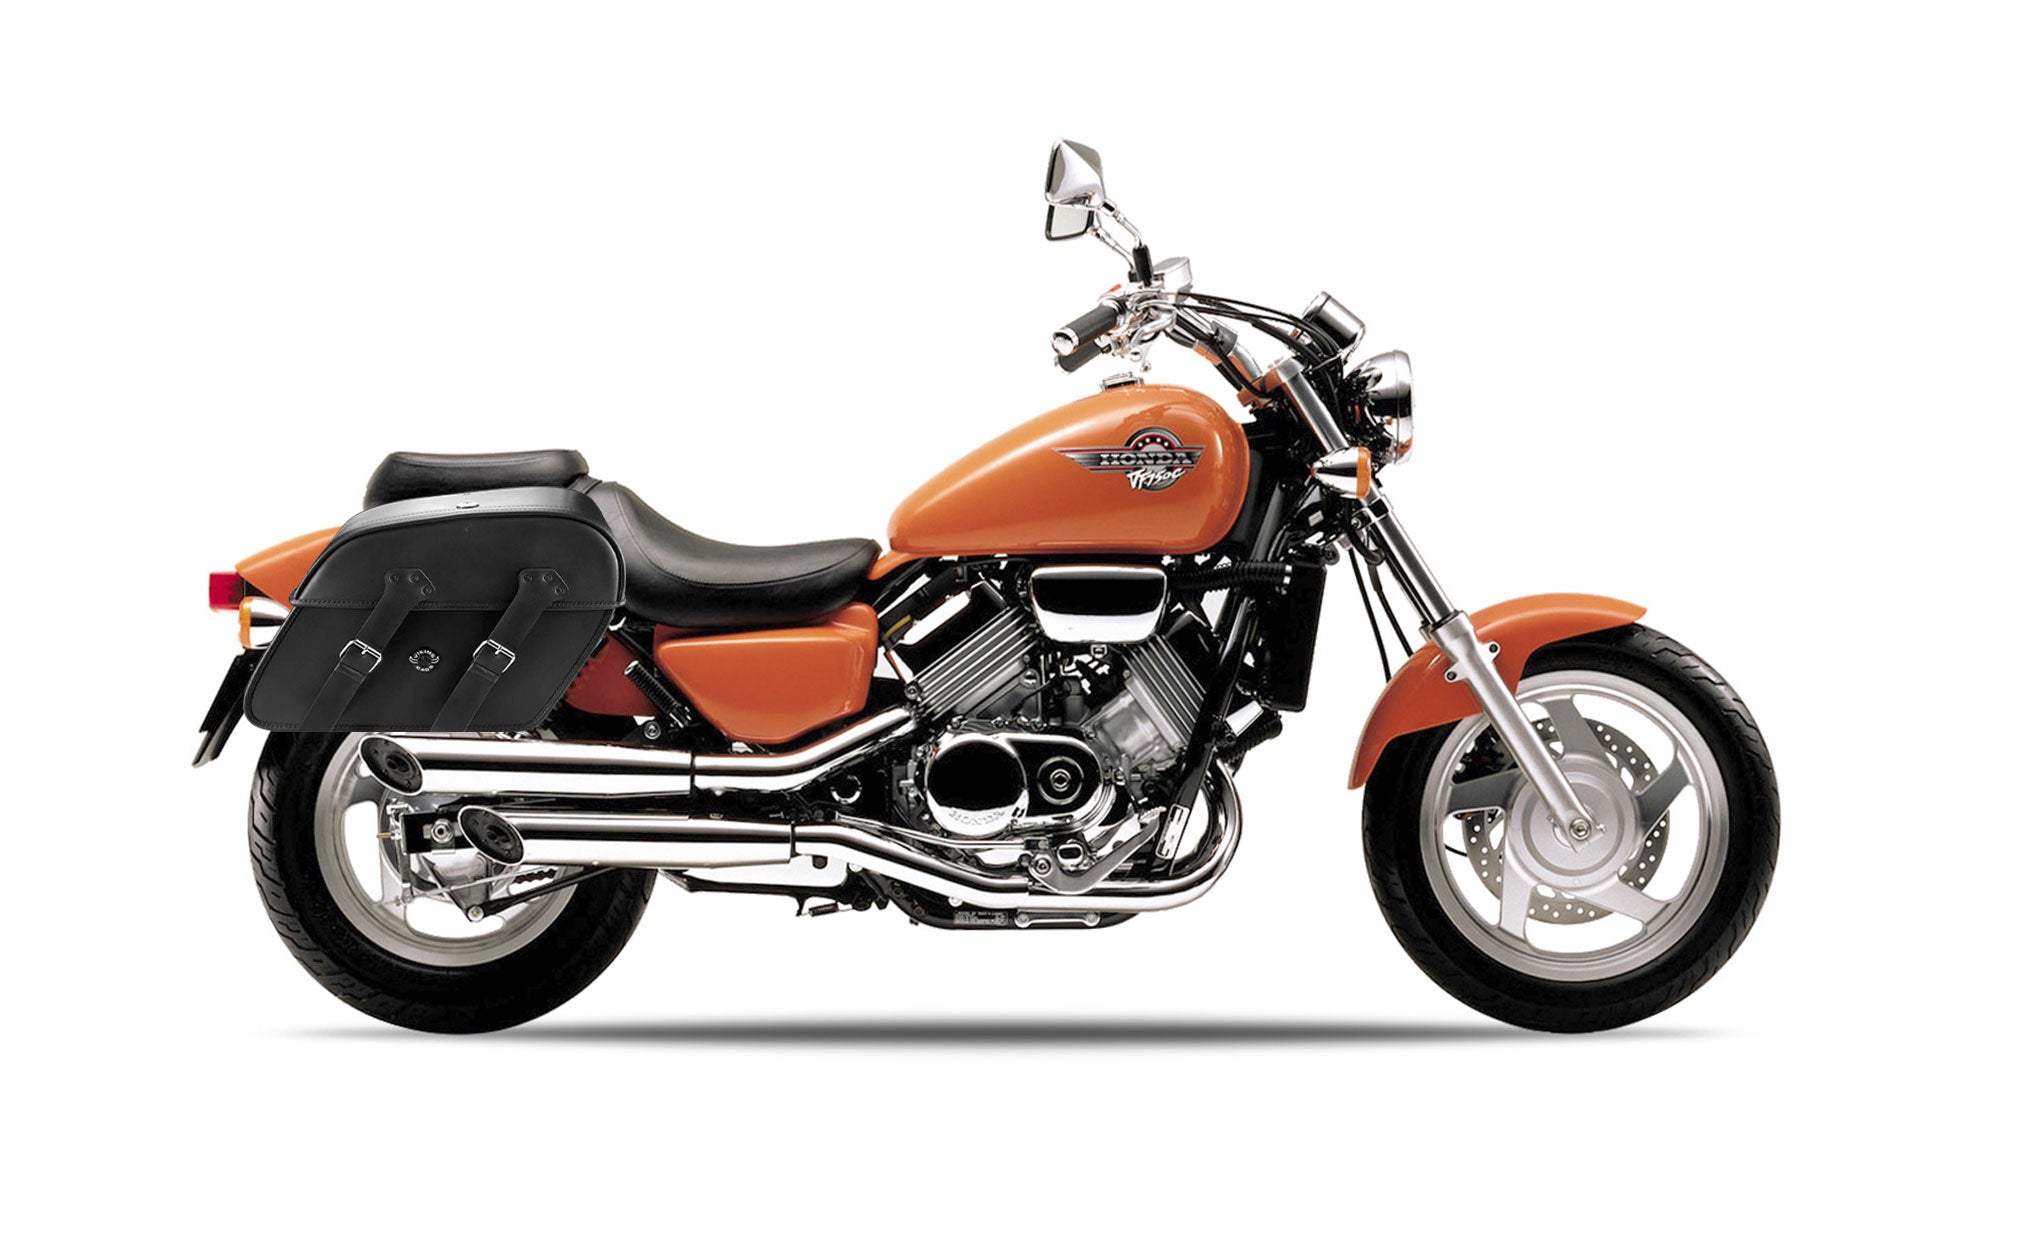 Viking Raven Extra Large Honda Magna 750 Vf750C Shock Cut Out Leather Motorcycle Saddlebags on Bike Photo @expand